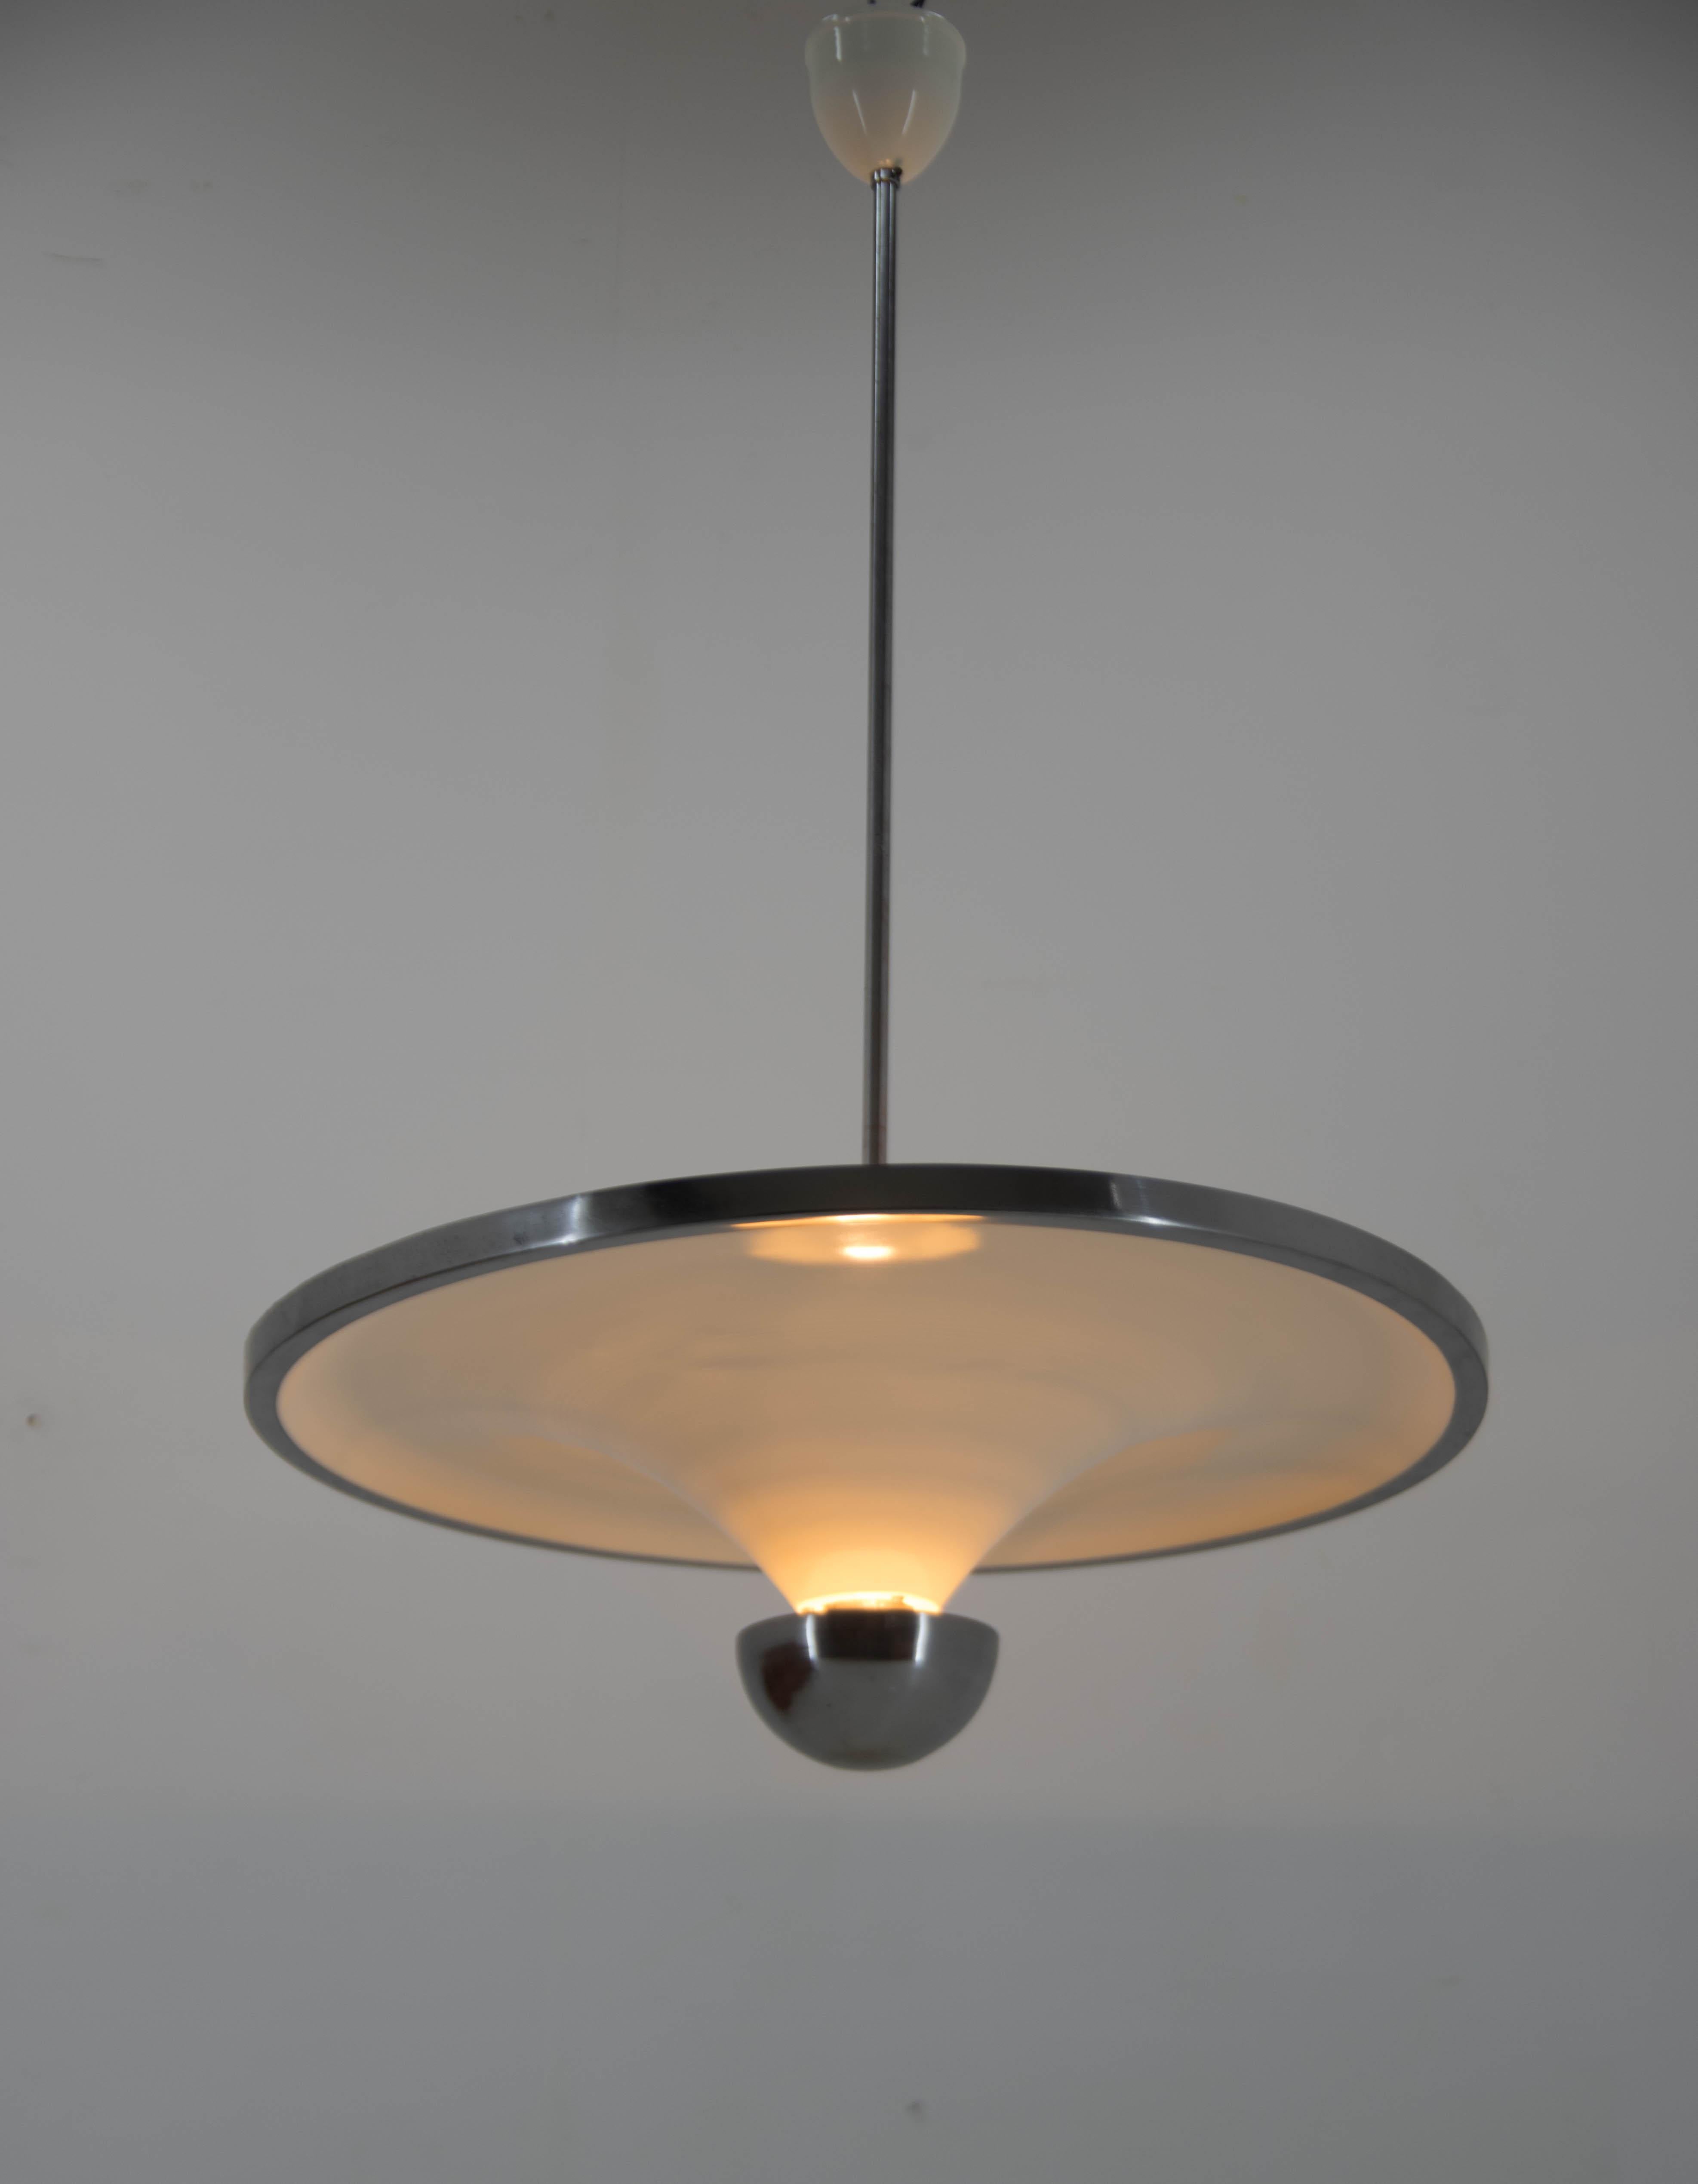 Magnifique lustre simple et élégant à lumière indirecte avec ampoule inférieure réglable, conçu par Franta Anyz et exécuté par IAS dans les années 1920. 
Restauré avec soin : 
nouvelle peinture de couleur ivoire
recâblage : deux circuits séparés -